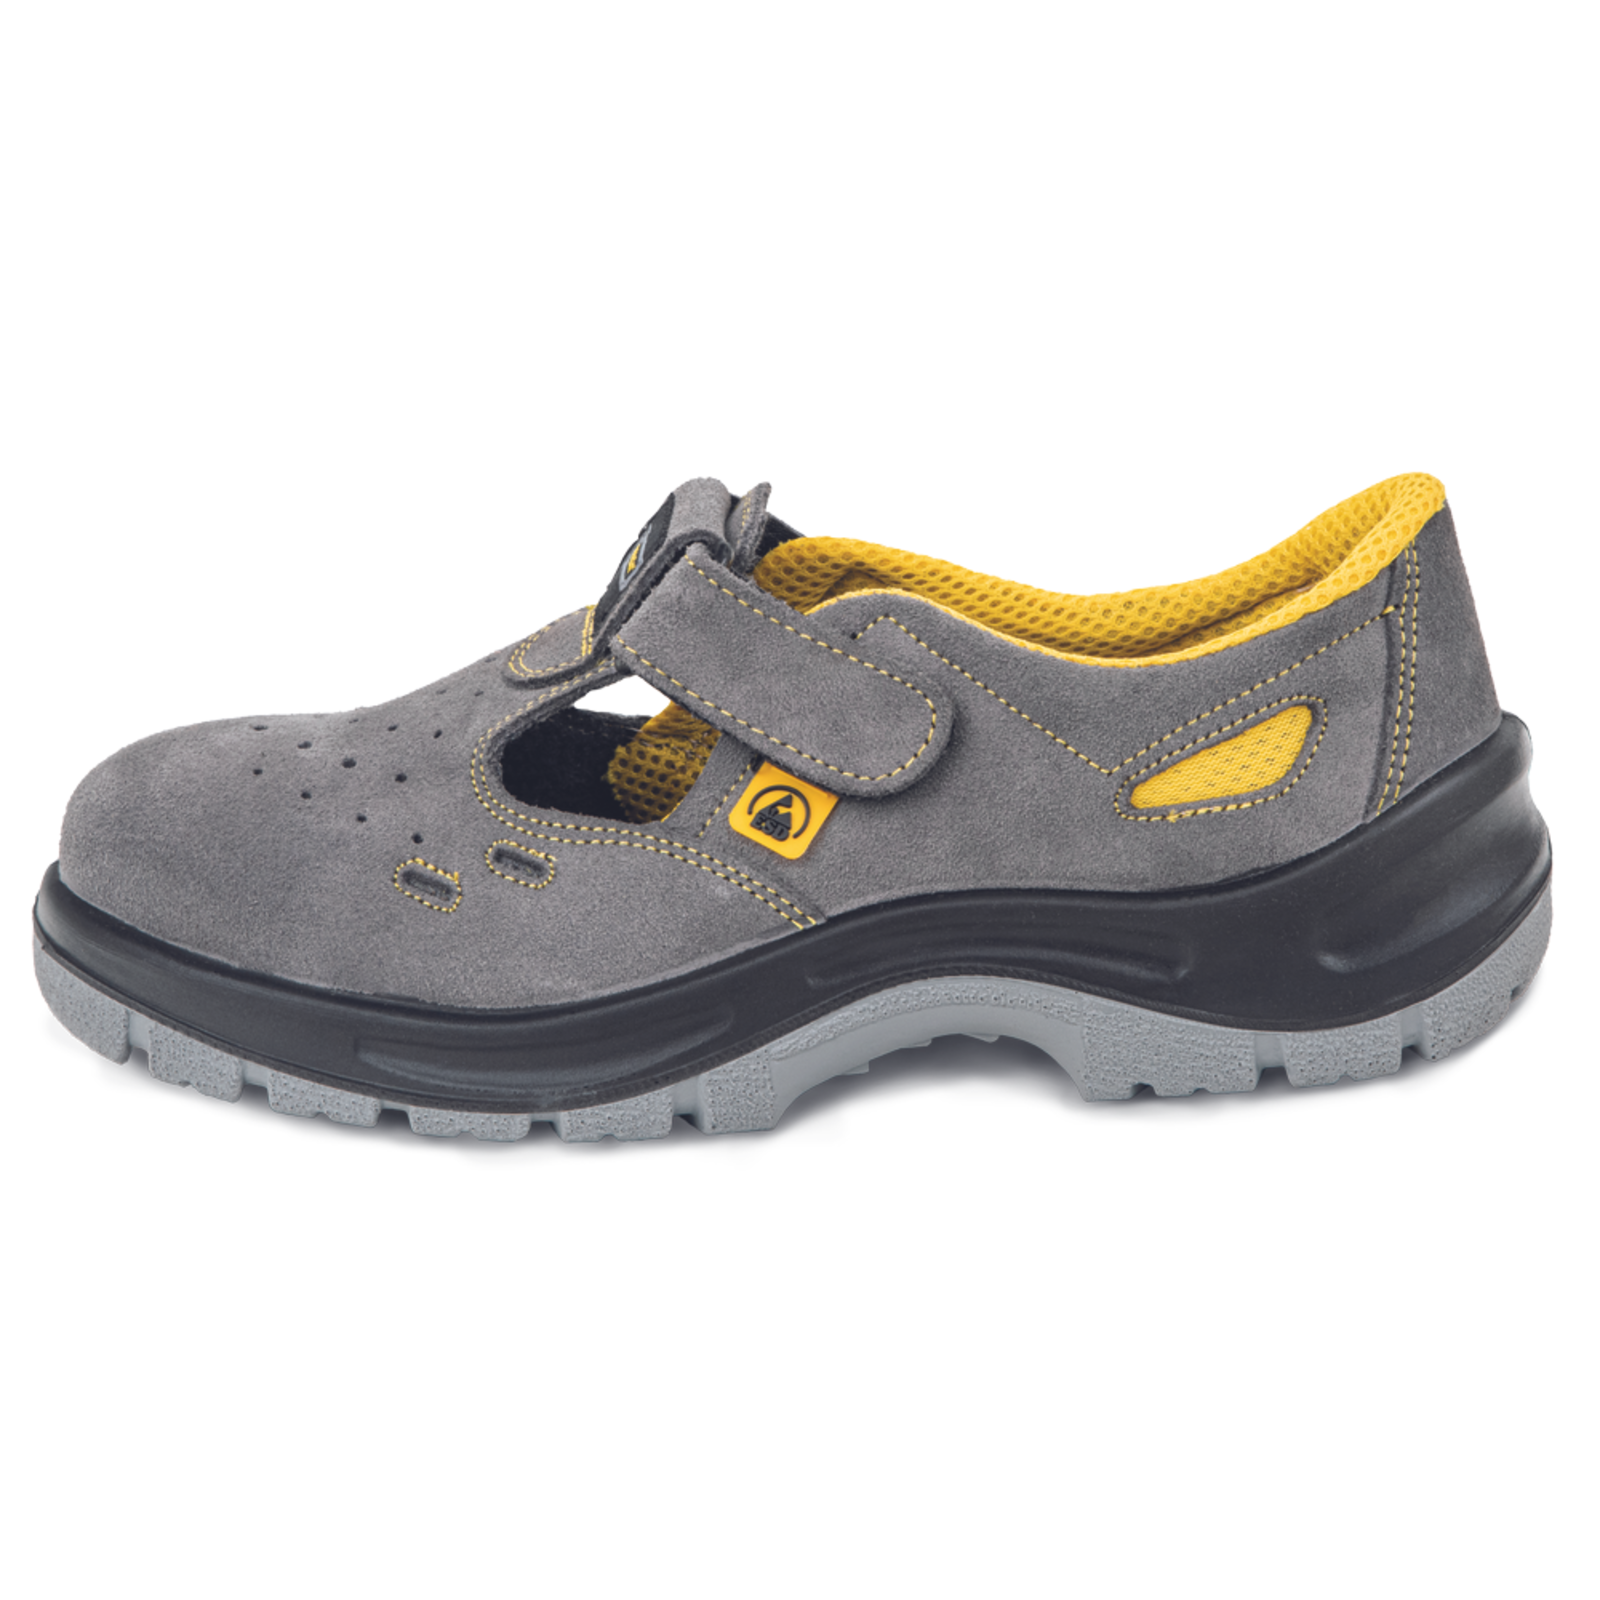 Pracovné bezpečnostné sandále Panda Selma MF ESD S1P SRC - veľkosť: 40, farba: sivá/žltá